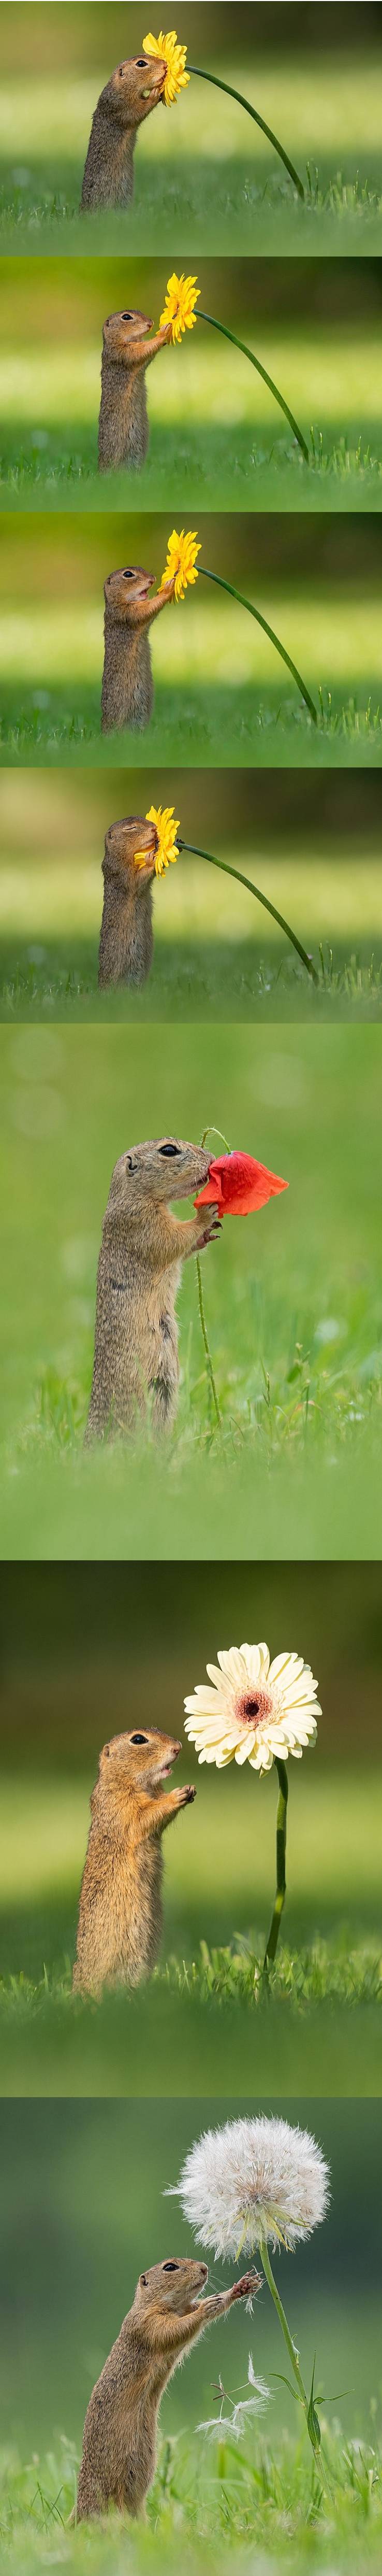 네덜란드 사진 작가가 찍은 꽃향기 맡는 다람쥐.jpg